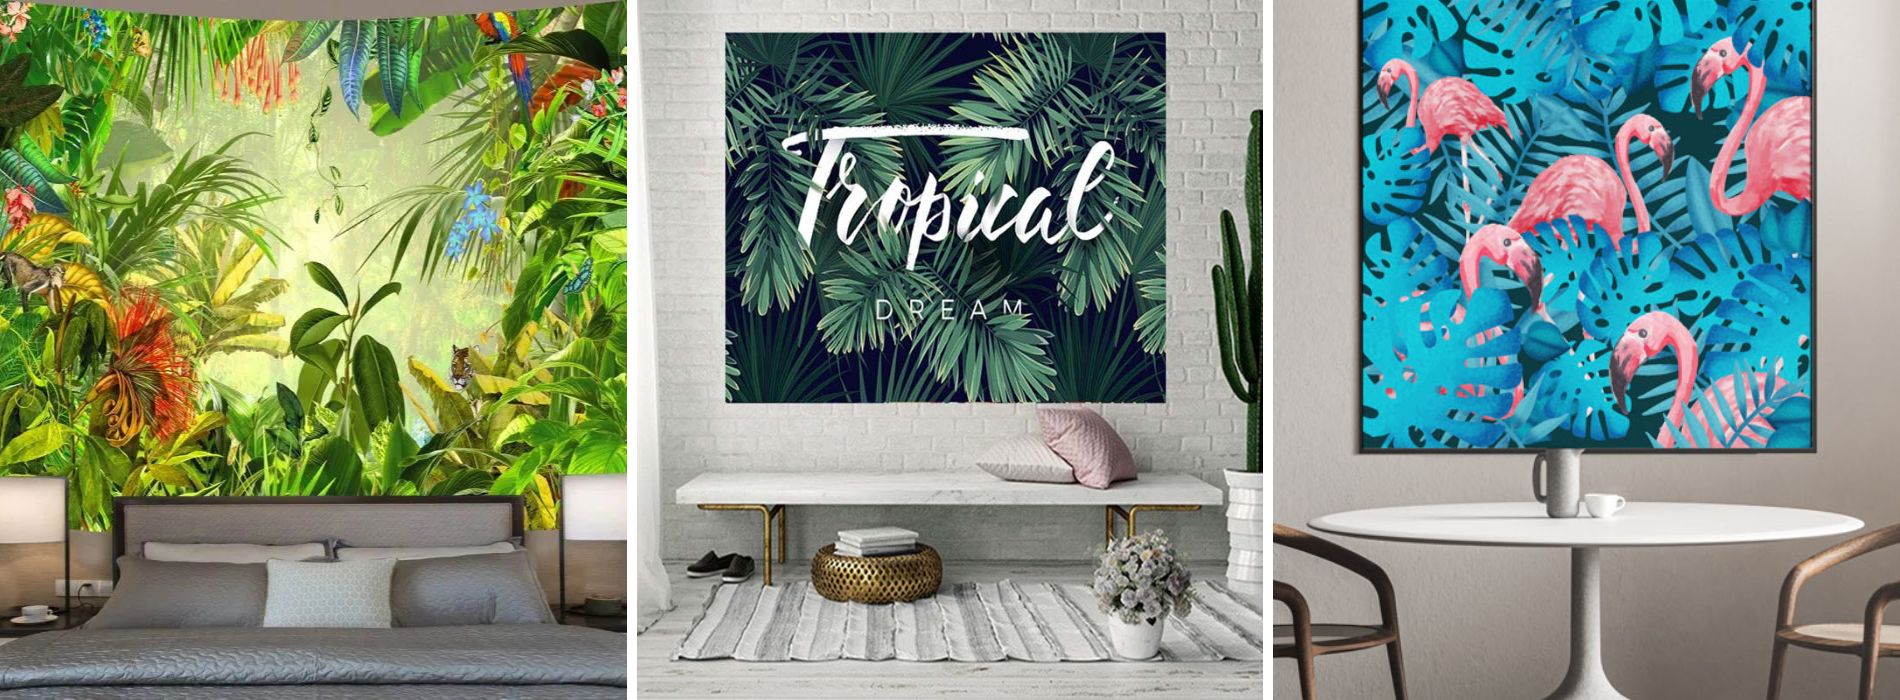 Décoration-murale-tropicale